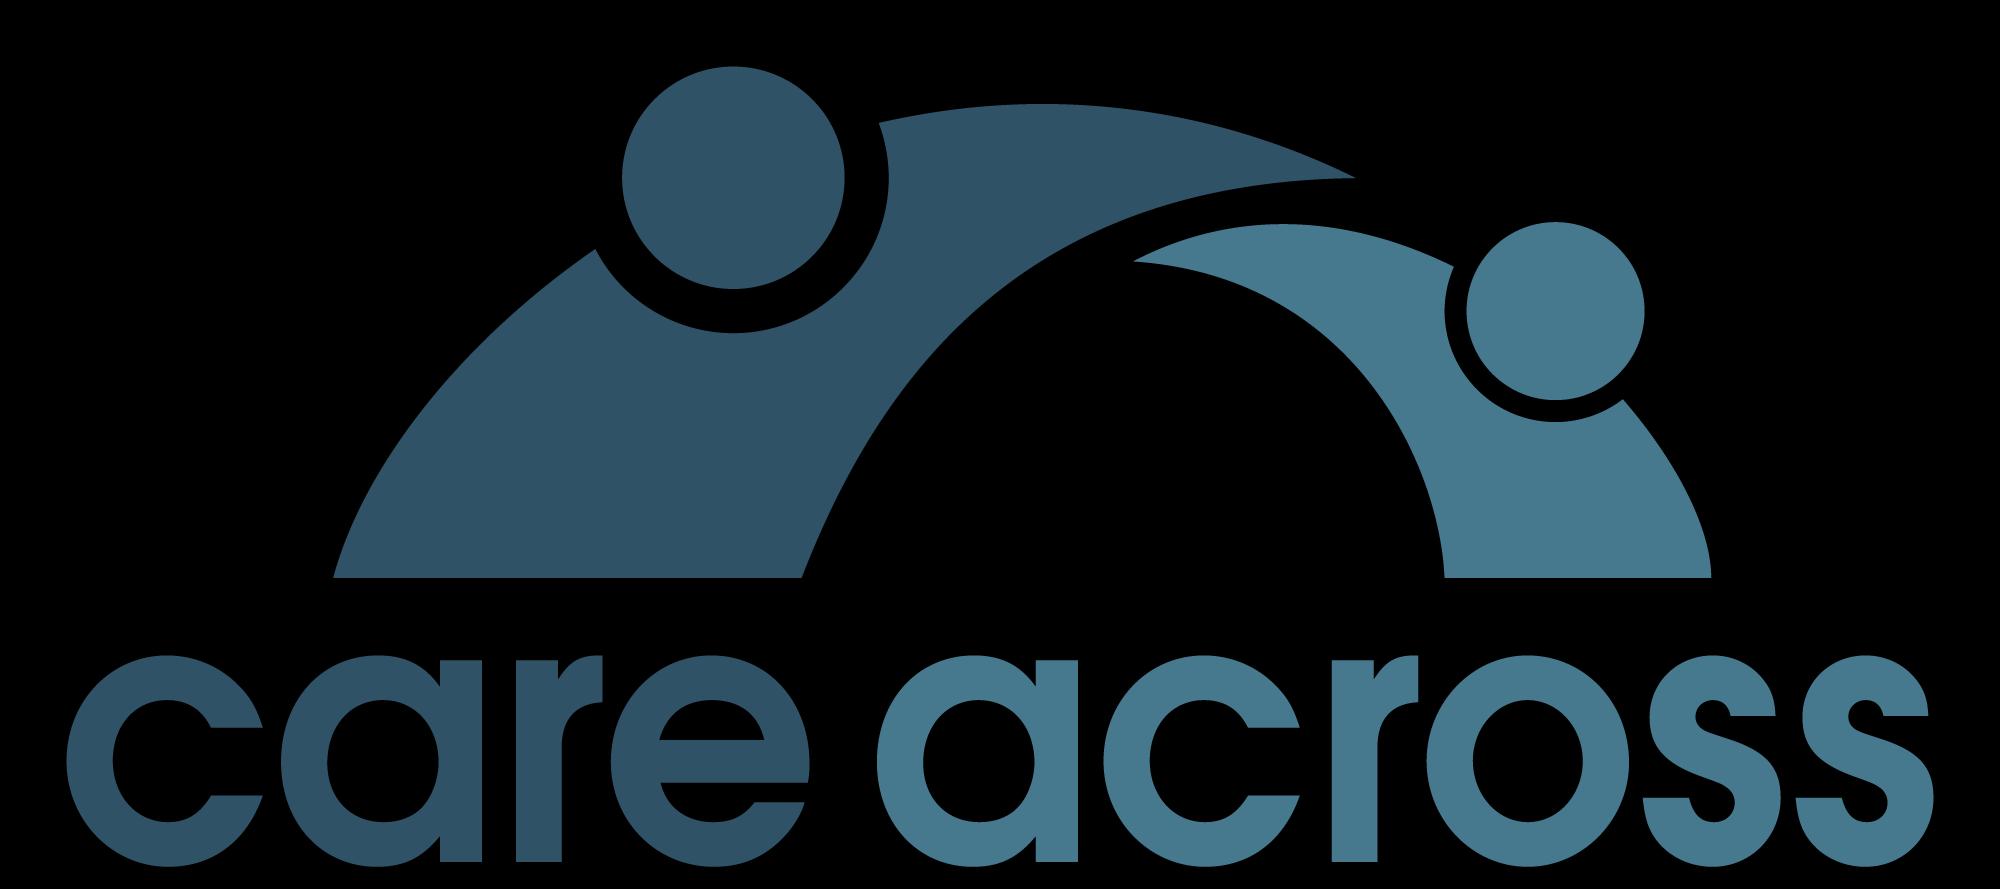 CareAcross_logo